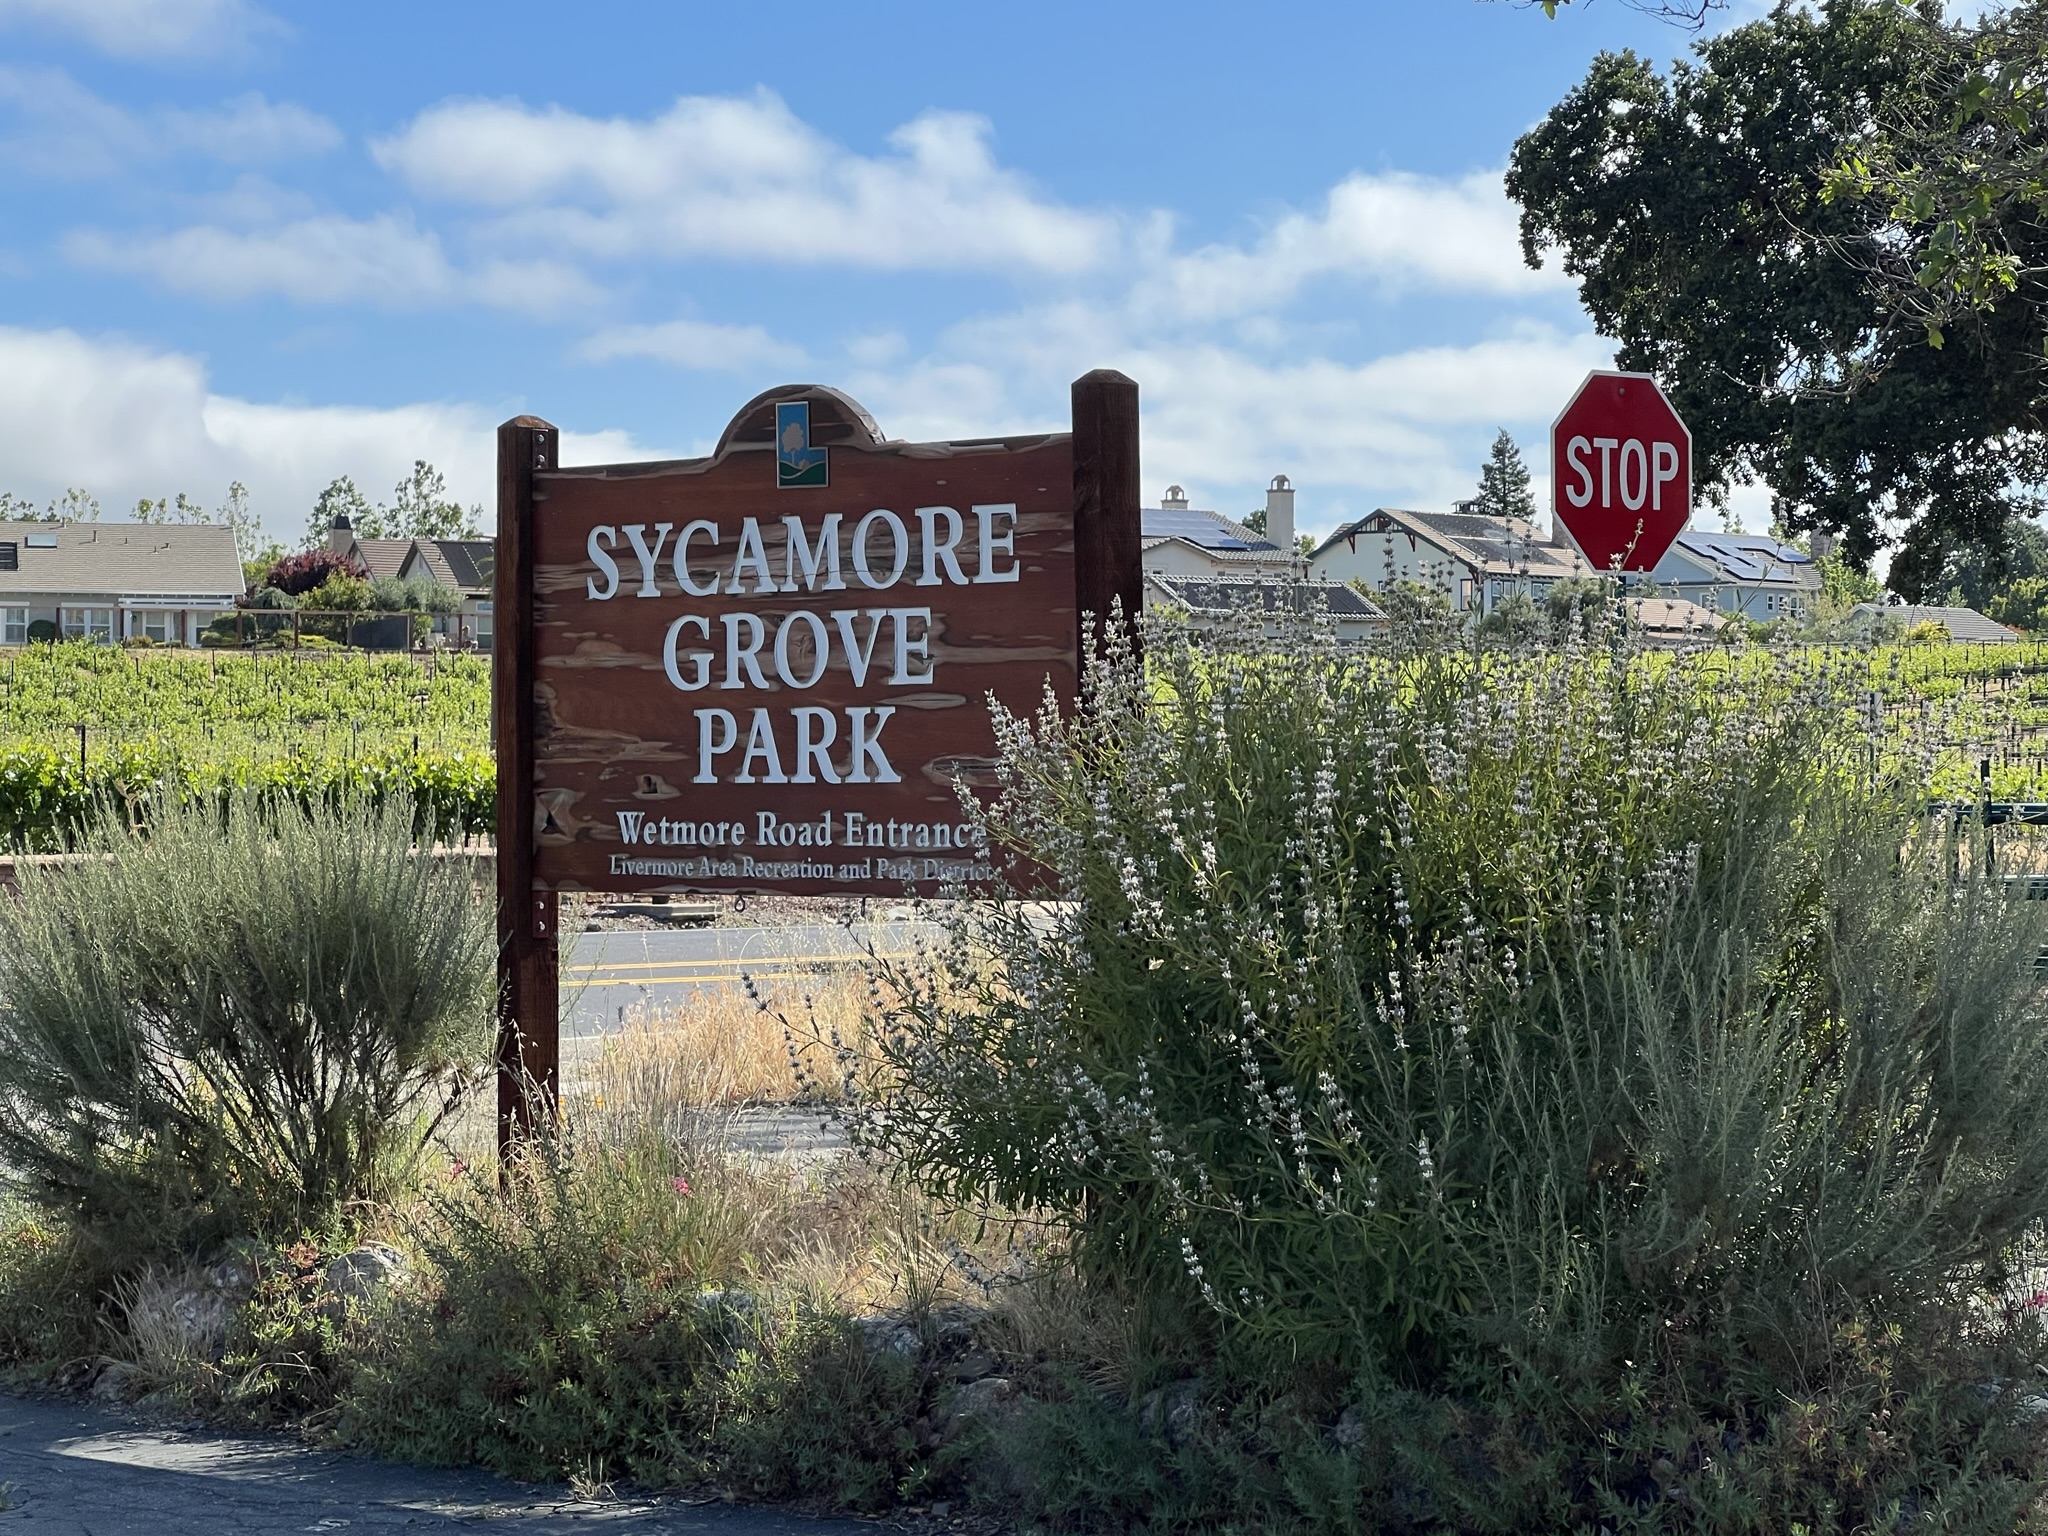 Sycamore Grove Park